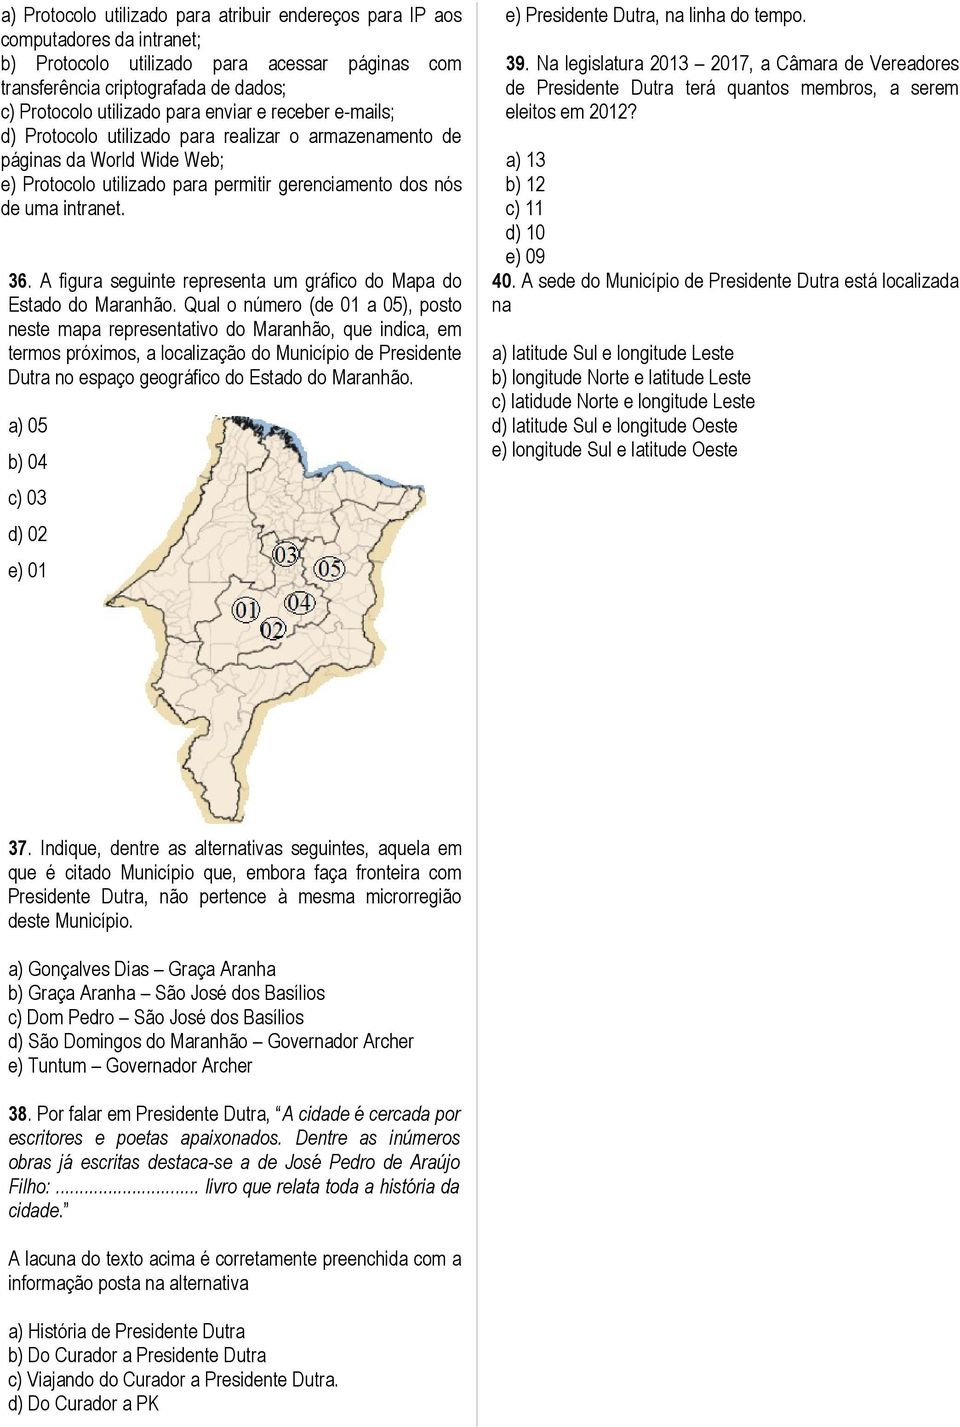 A figura seguinte representa um gráfico do Mapa do Estado do Maranhão.